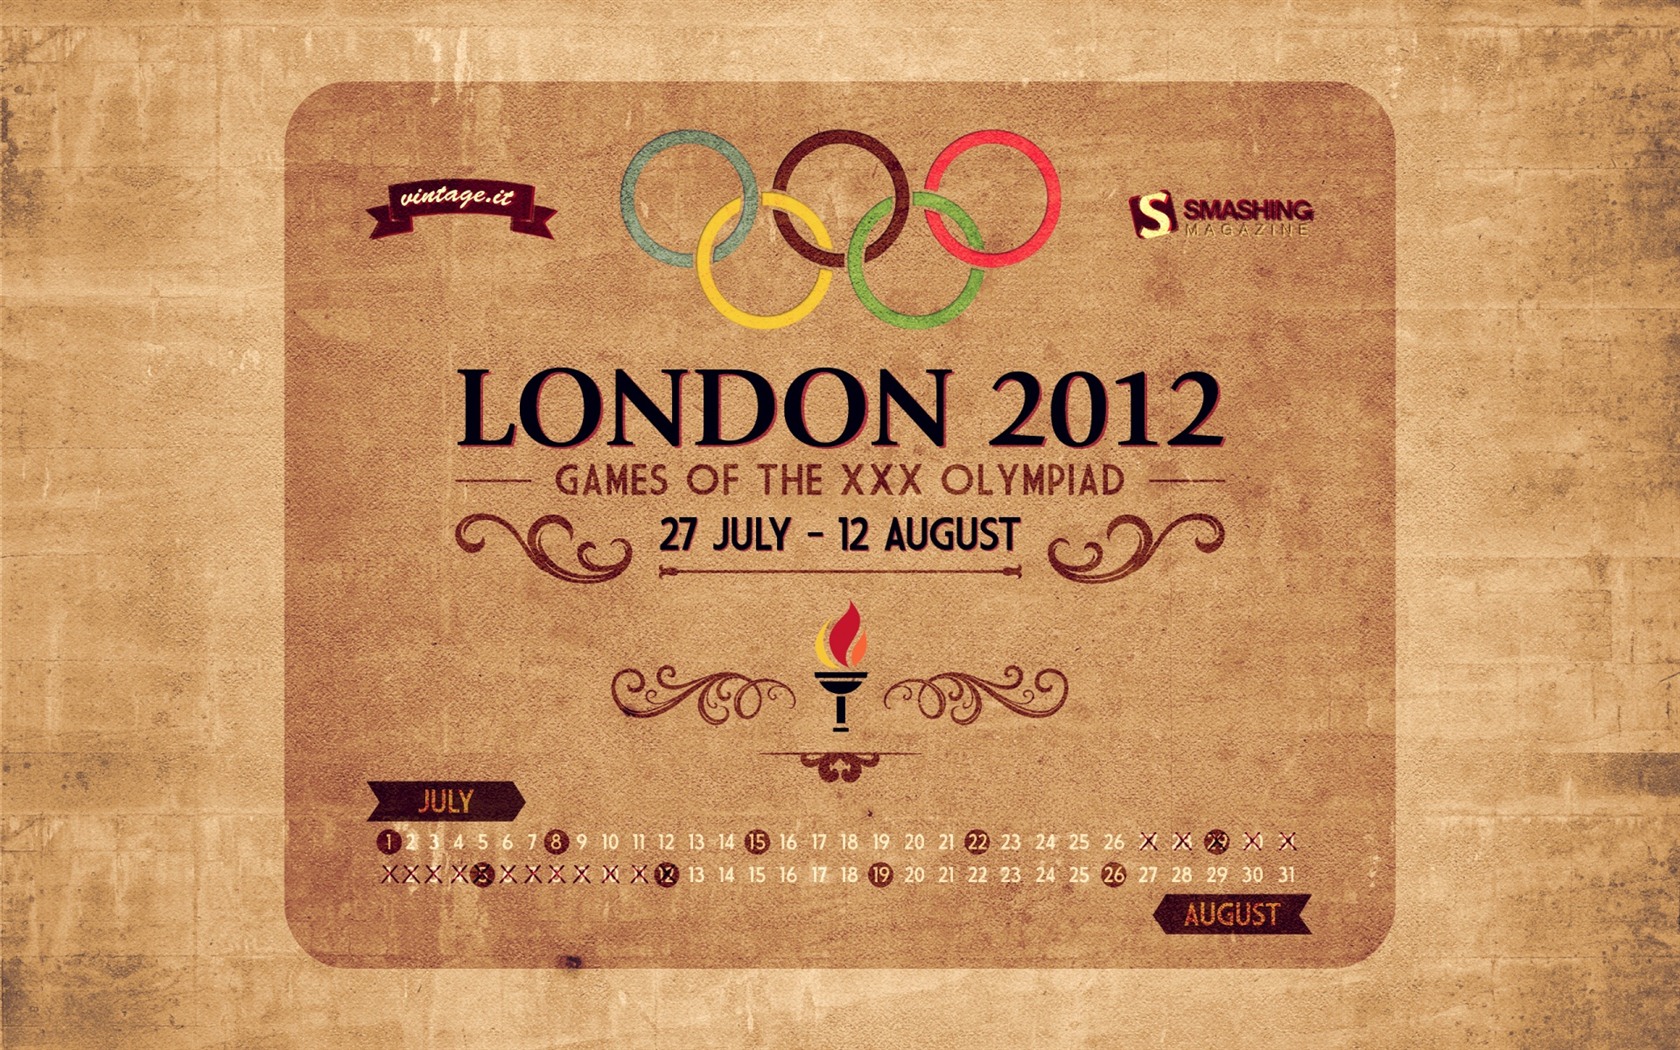 Londres 2012 Olimpiadas fondos temáticos (1) #24 - 1680x1050